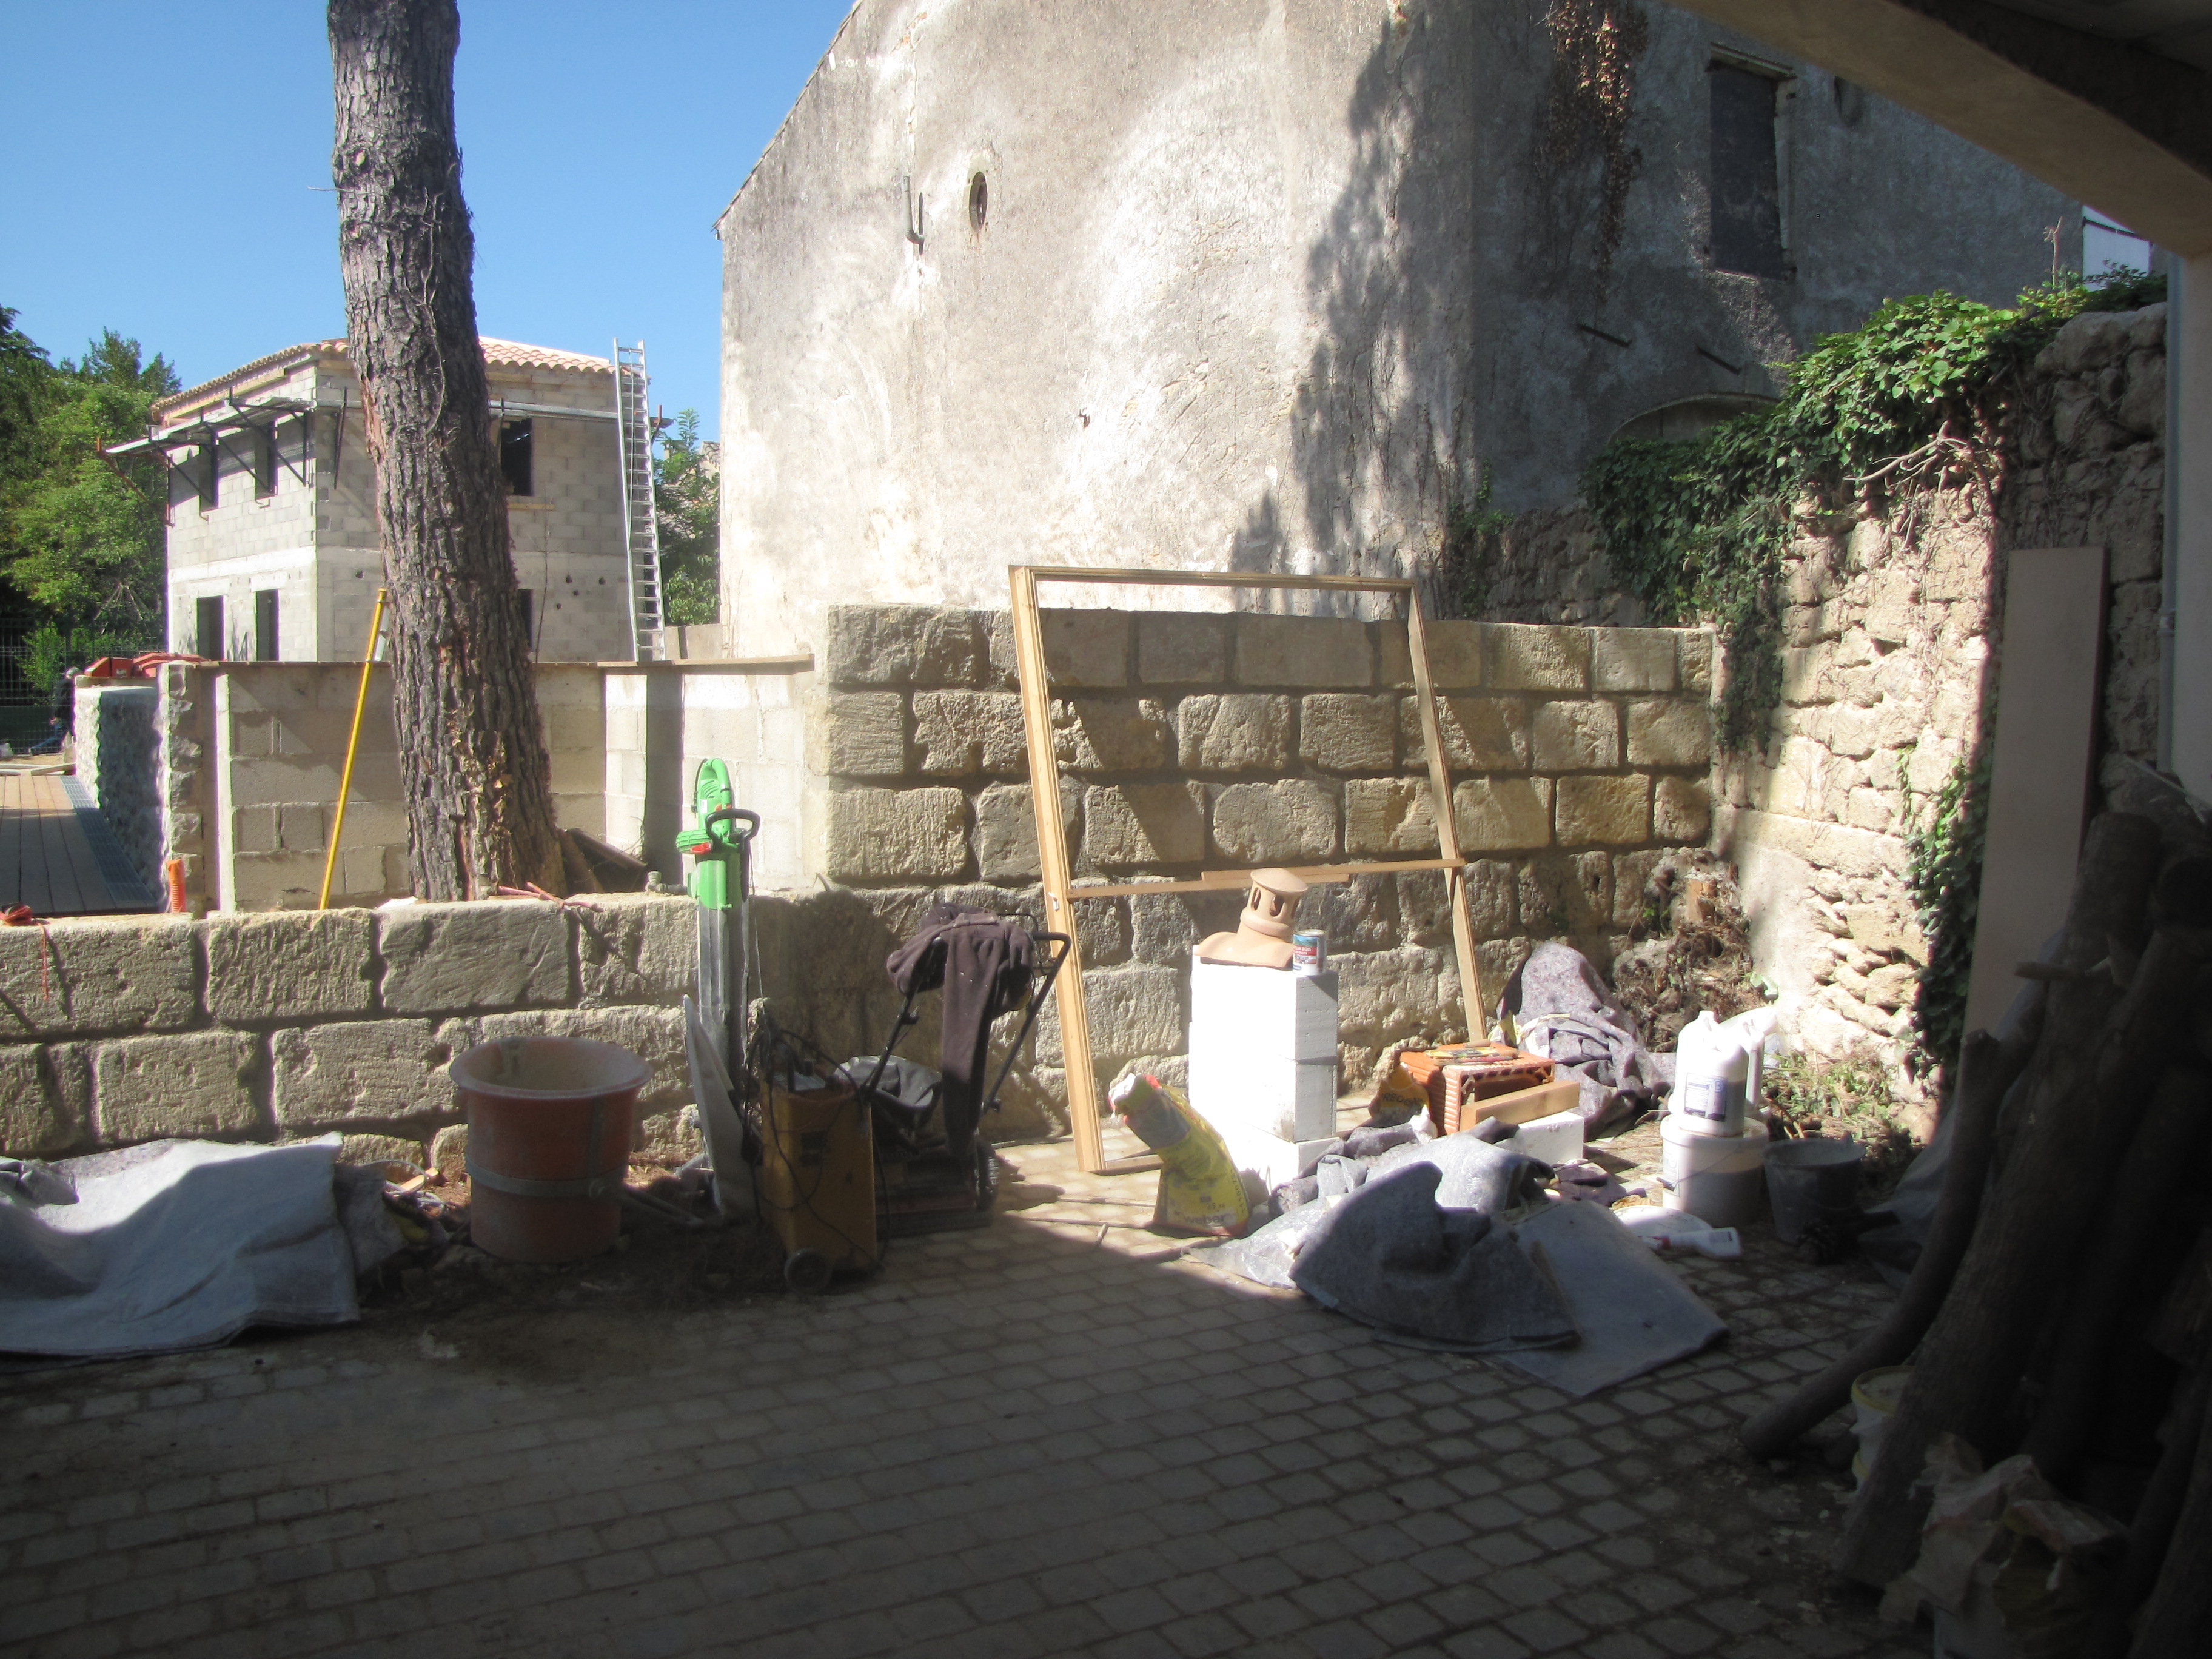 Desportes rénovation. Piscine à débordement Hérault. Habillage en pierres des murs extérieurs.